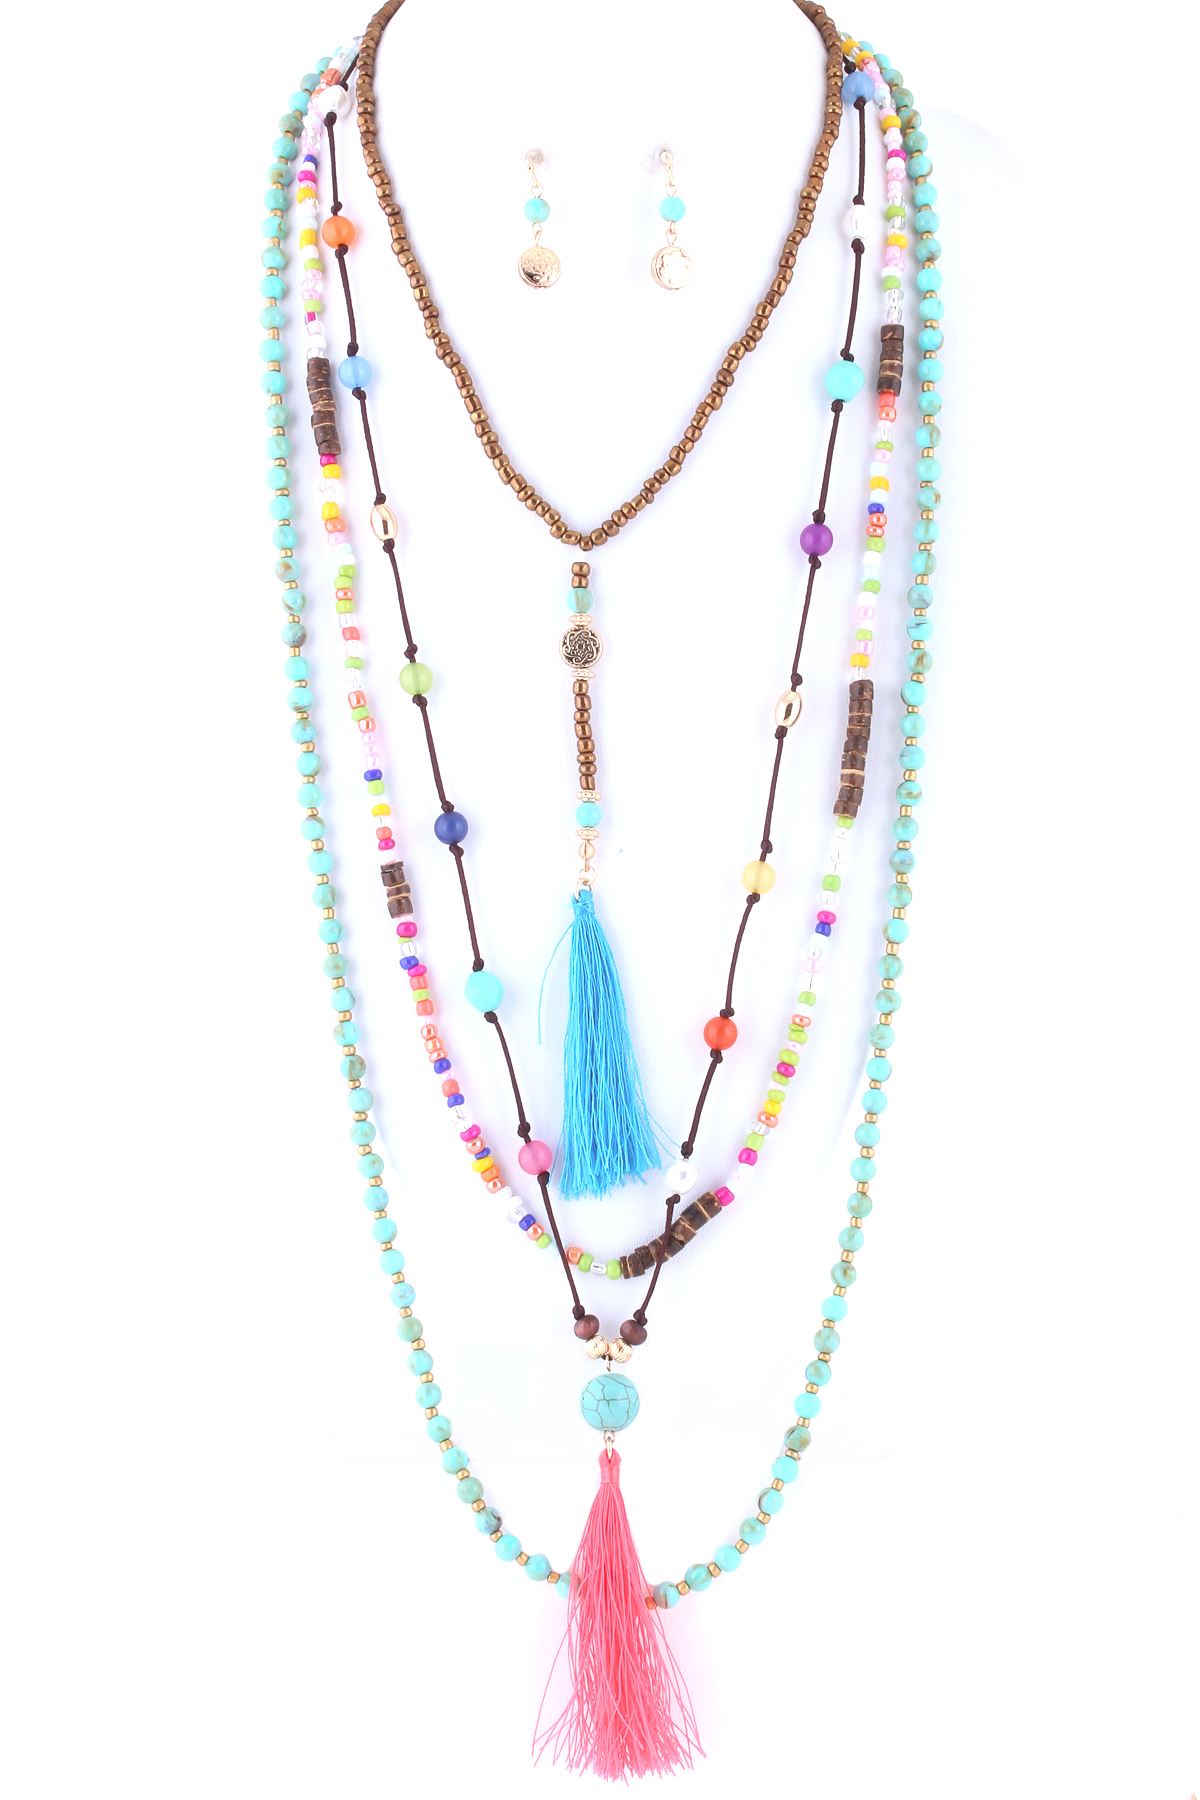 Lace Tassel choker Necklace | Layered choker necklace 